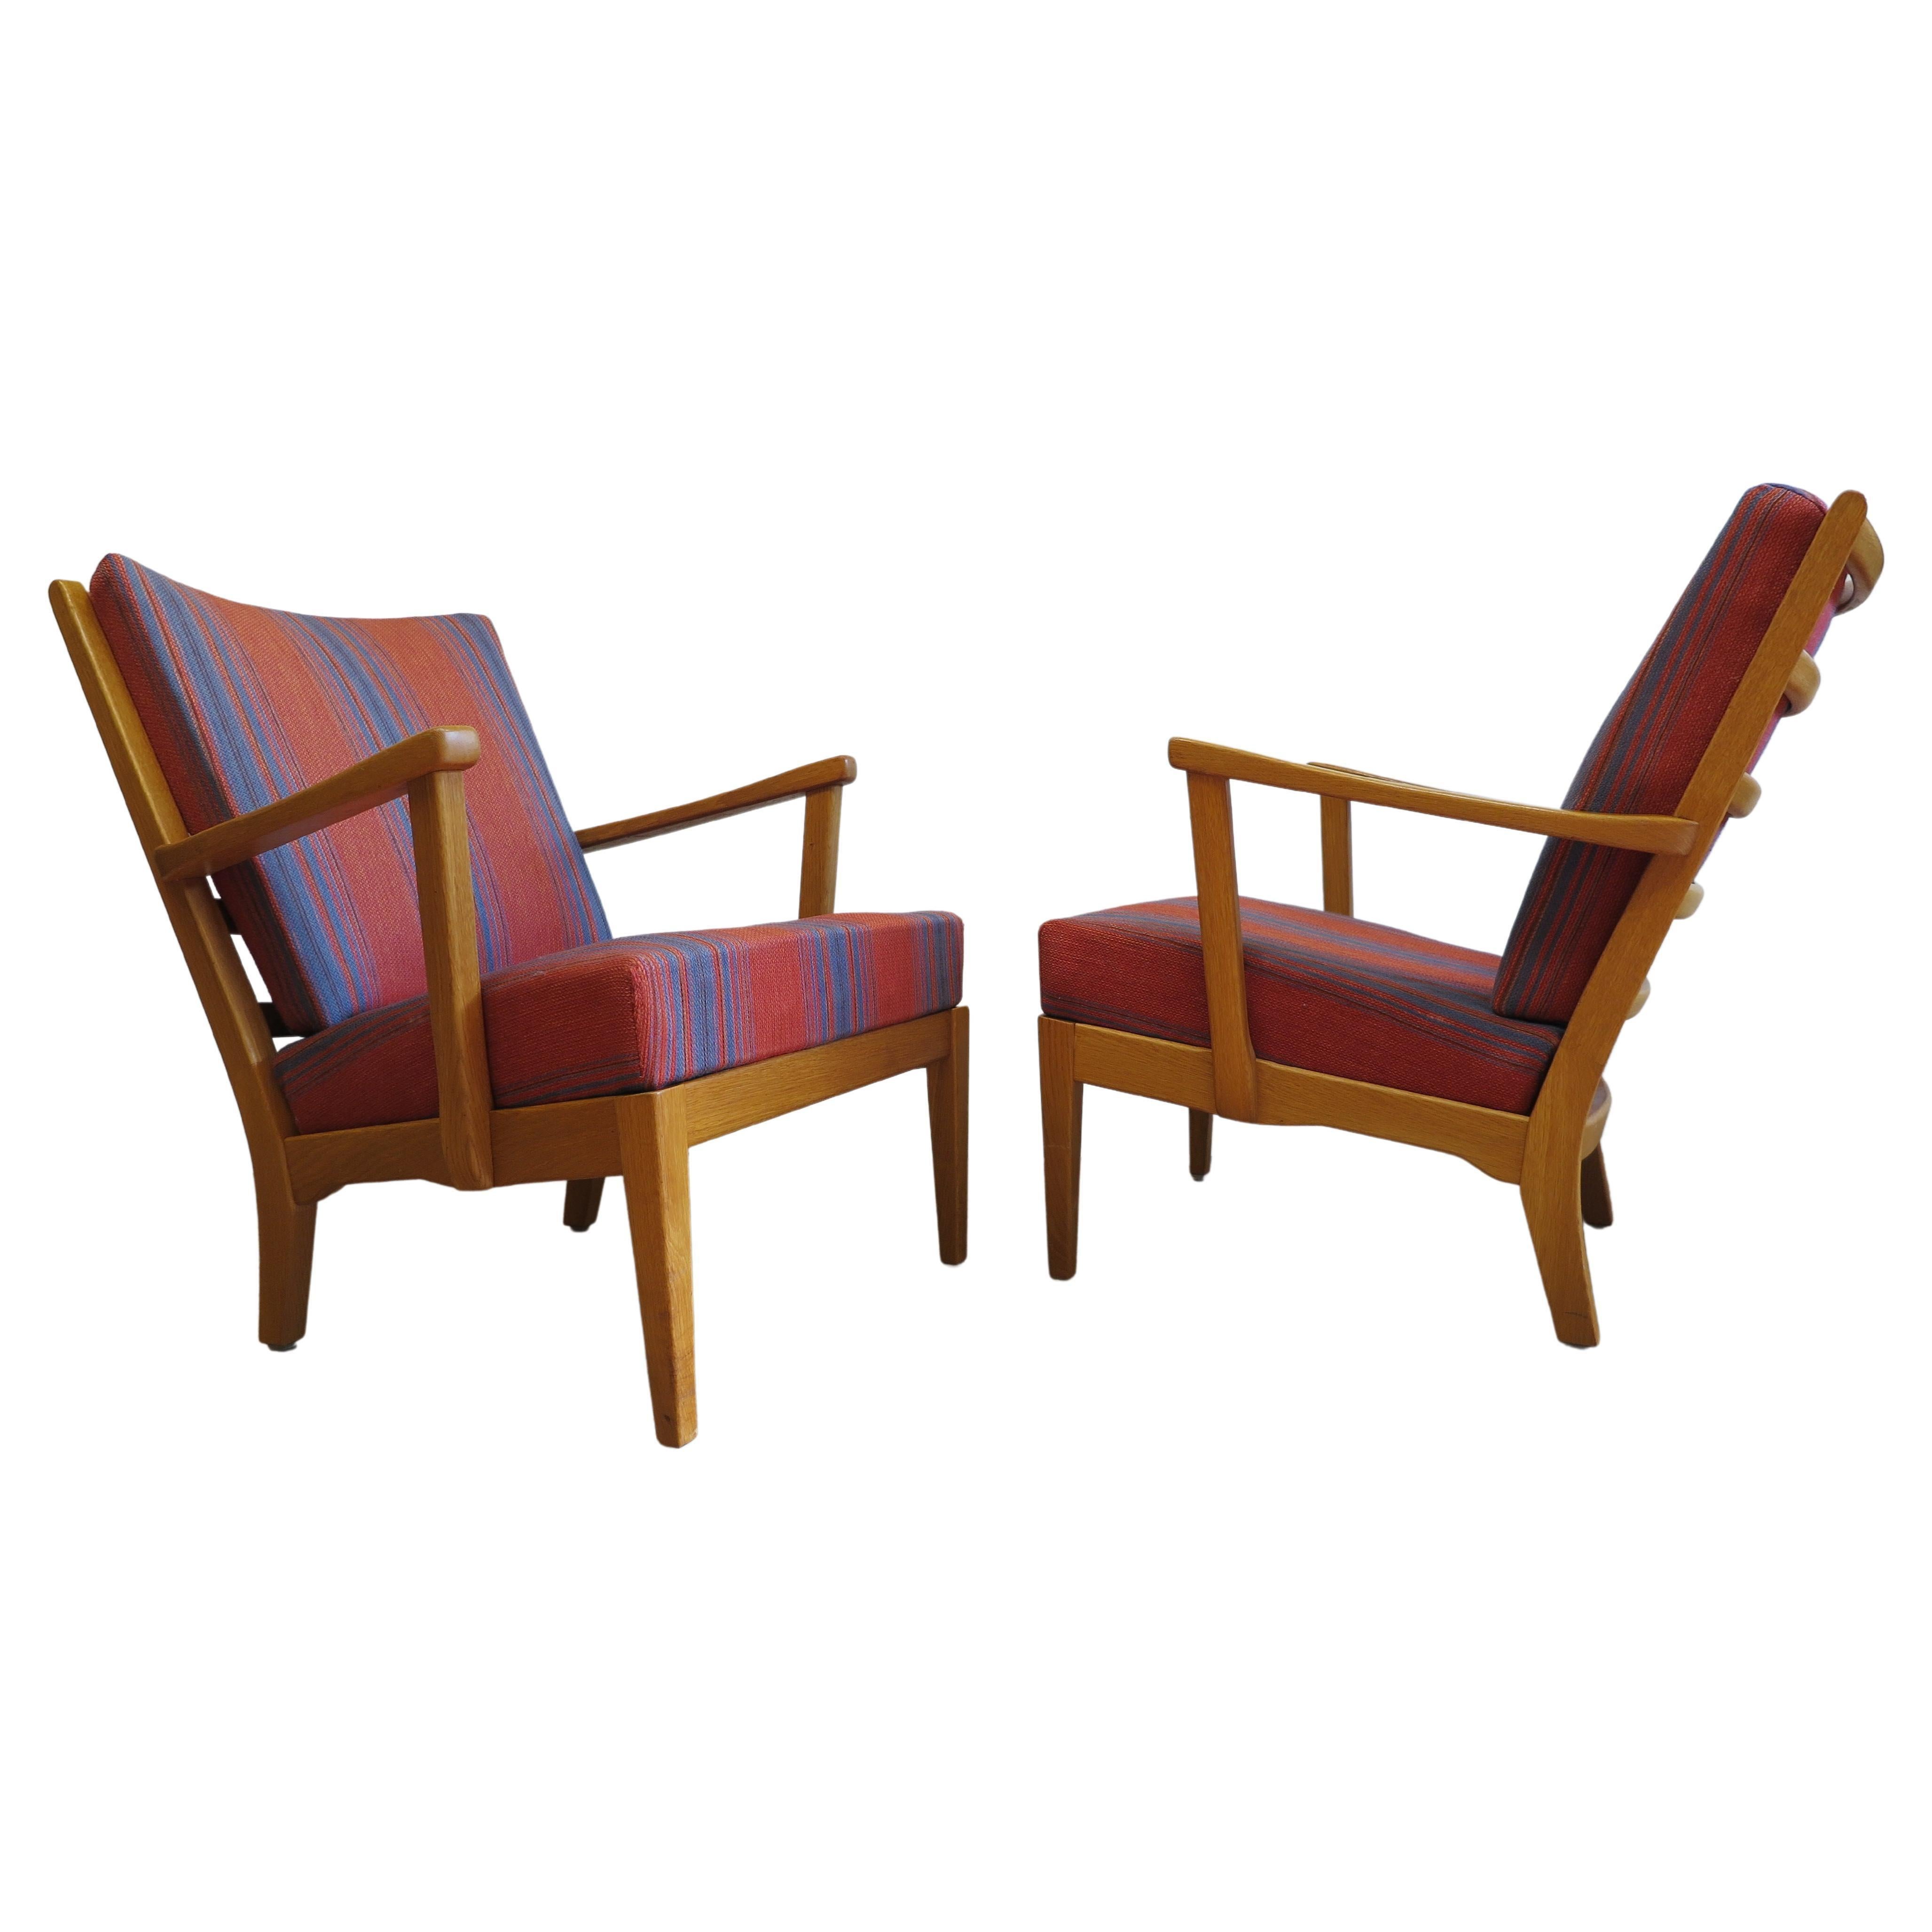 Une paire de chaises Carl Malmsten Visingo, toutes d'origine. Une paire spectaculaire de chaises Visingo de Carl Malmsten pour AB O.H. Sjogren Stoppmobler en chêne. En bon état d'origine, avec le tissu et les badges d'origine sur les deux chaises.